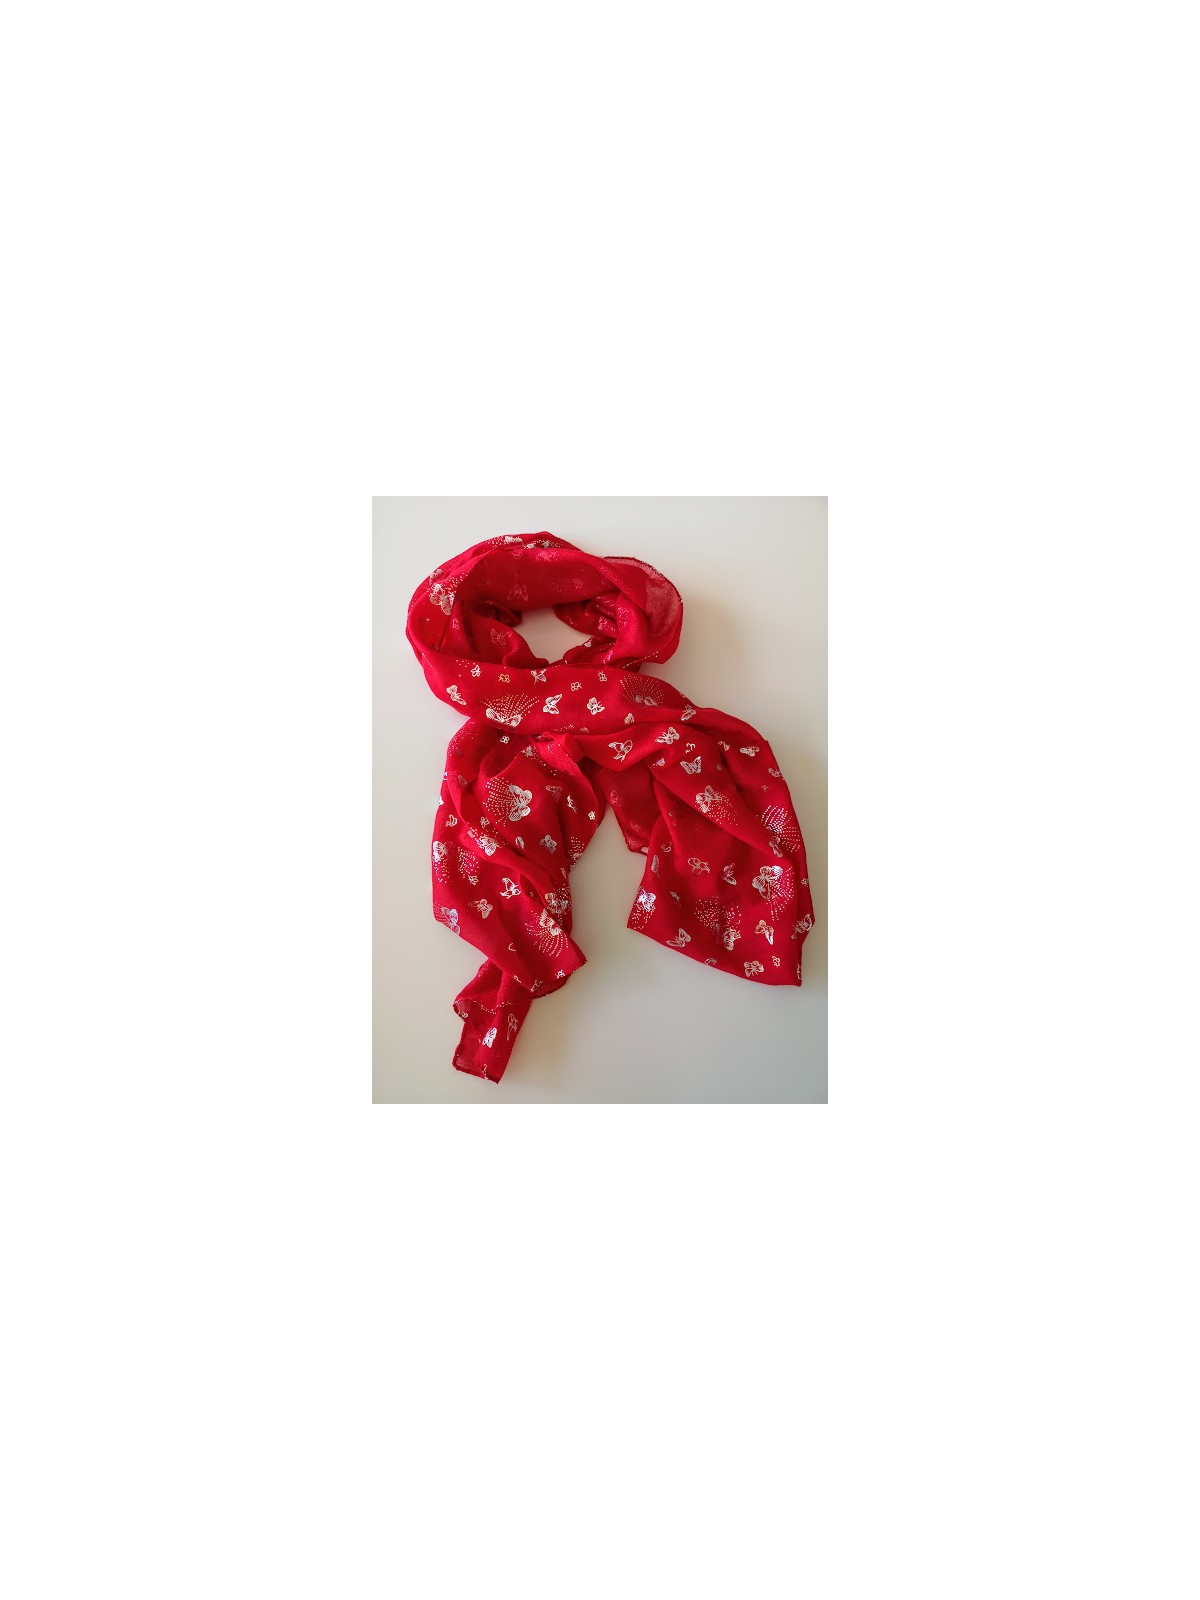 Foulard Fiona rouge avec papillons couleur argent l 2 vue foulard sans compagnon l Tilleulmenthe boutique de mode femme en ligne